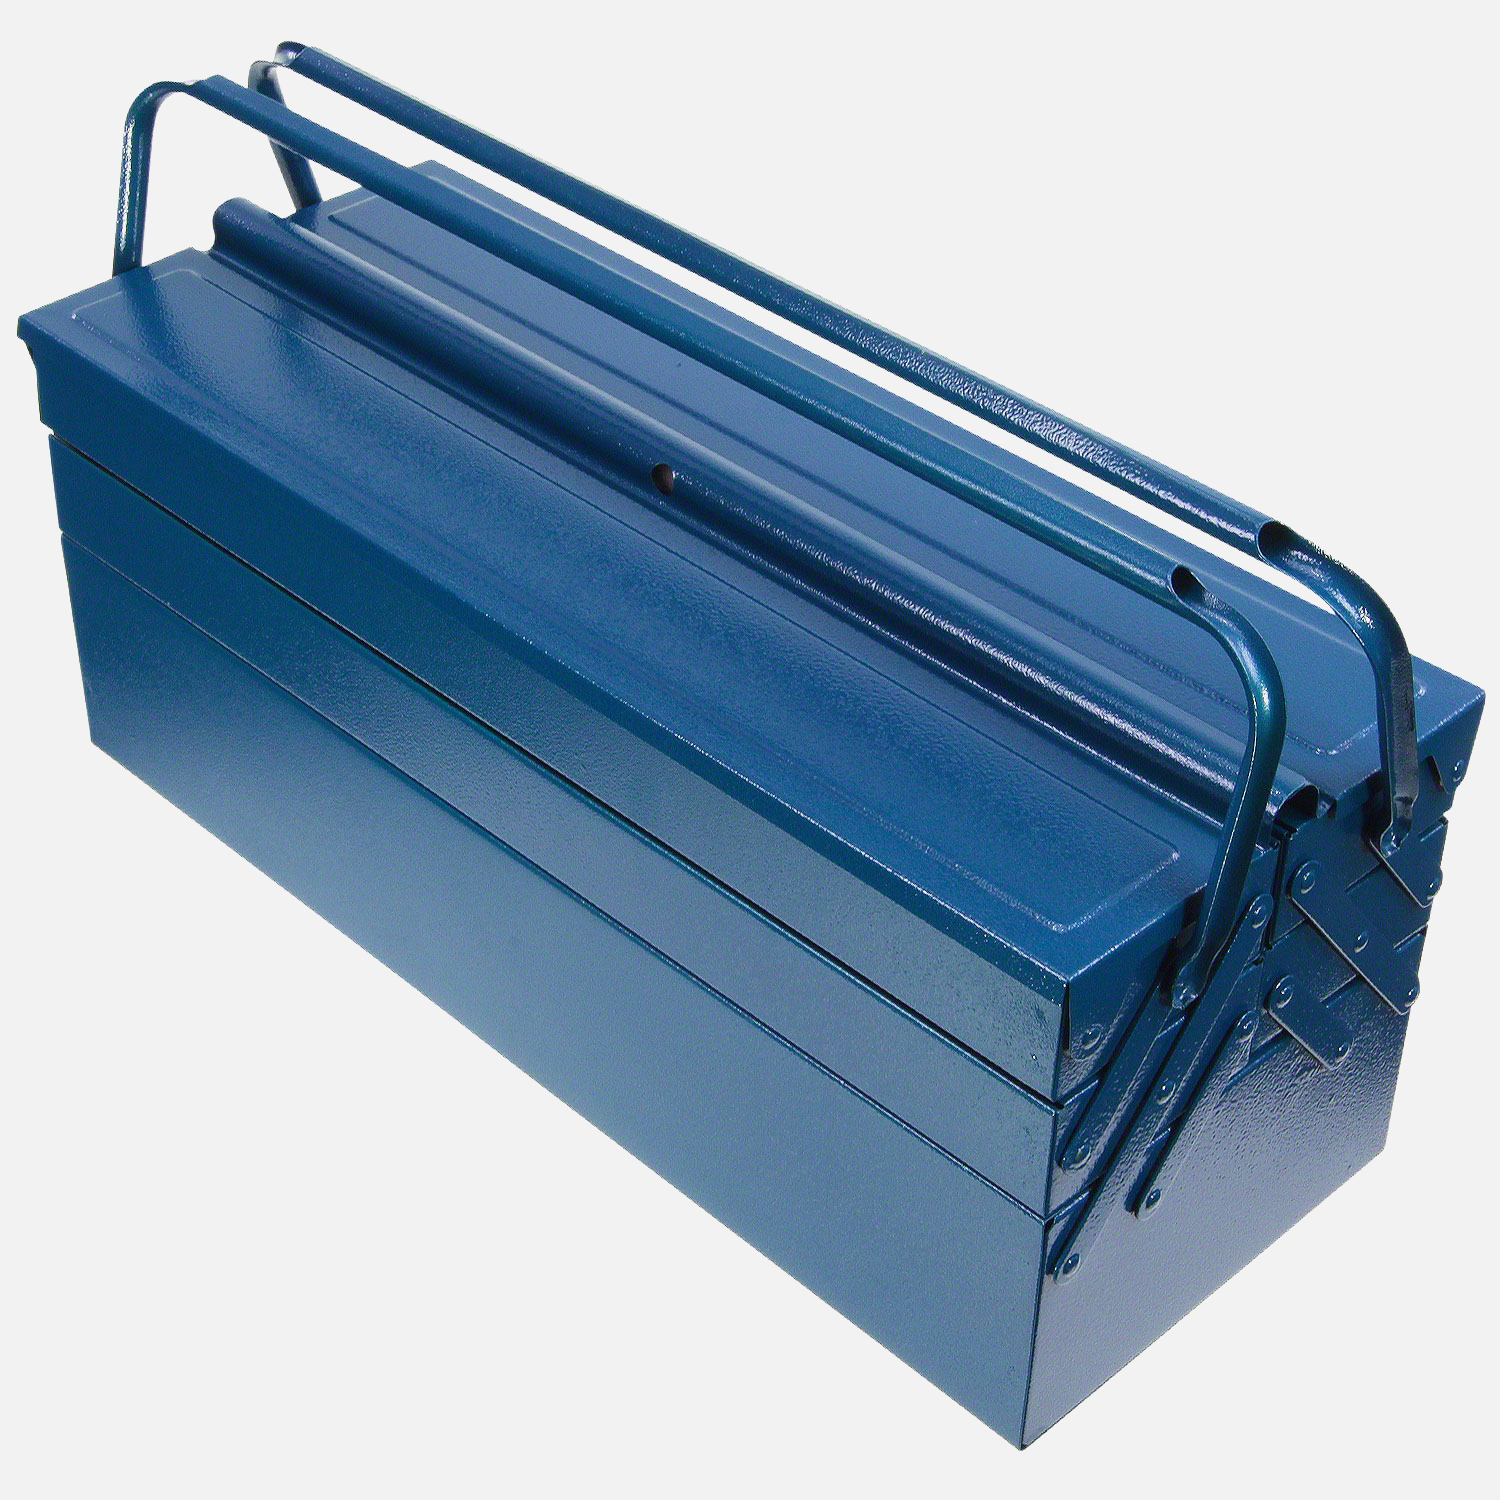 1 Allit Premium Metall-Werkzeugkasten, Werkzeugkoffer mit 4 ausziehbaren Fächern und einem großen Mittelfach in blau verschließbar